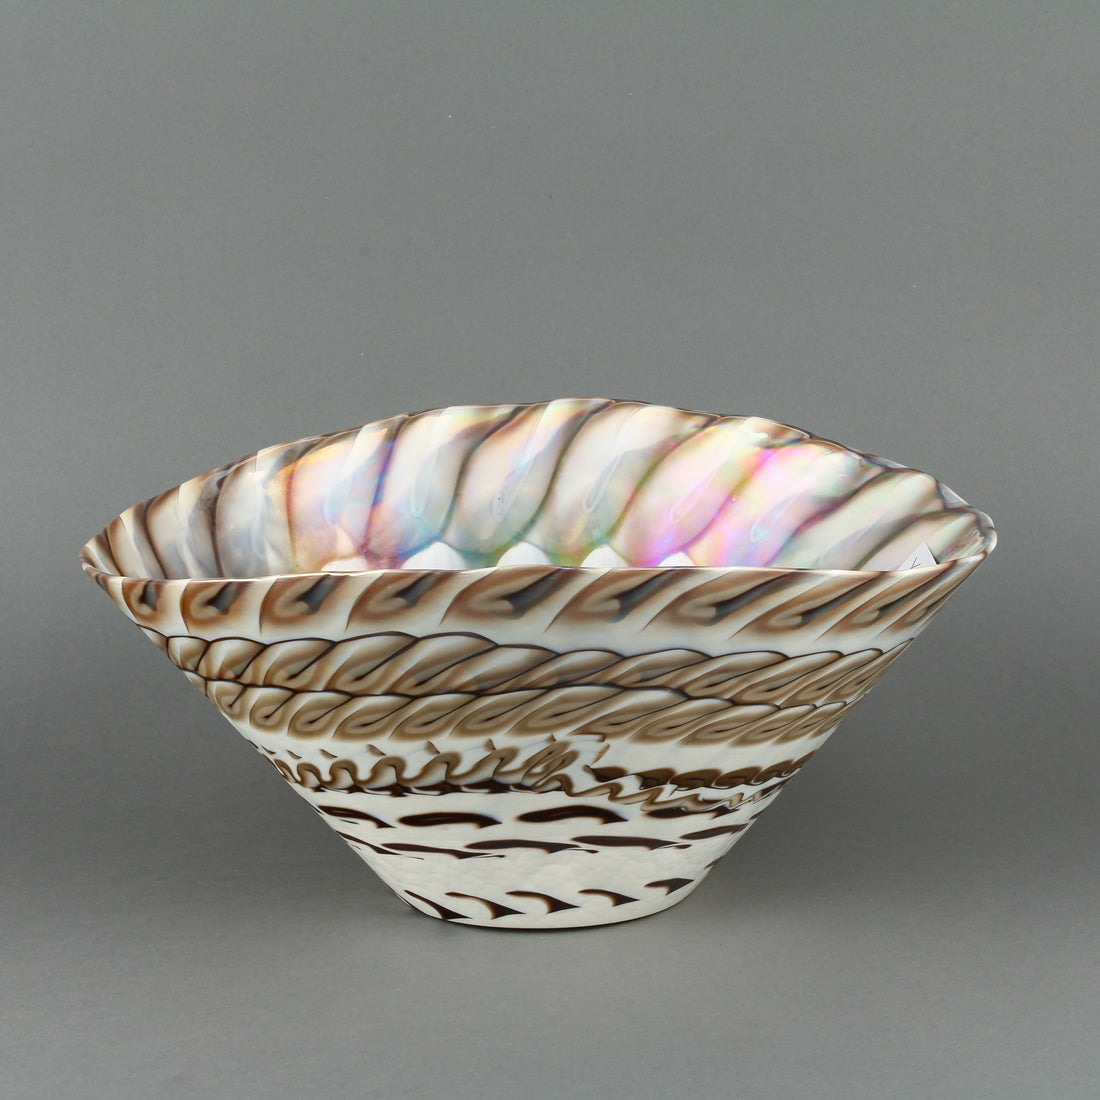 YALOS MURANO Belus Iridescent Art Glass Bowl